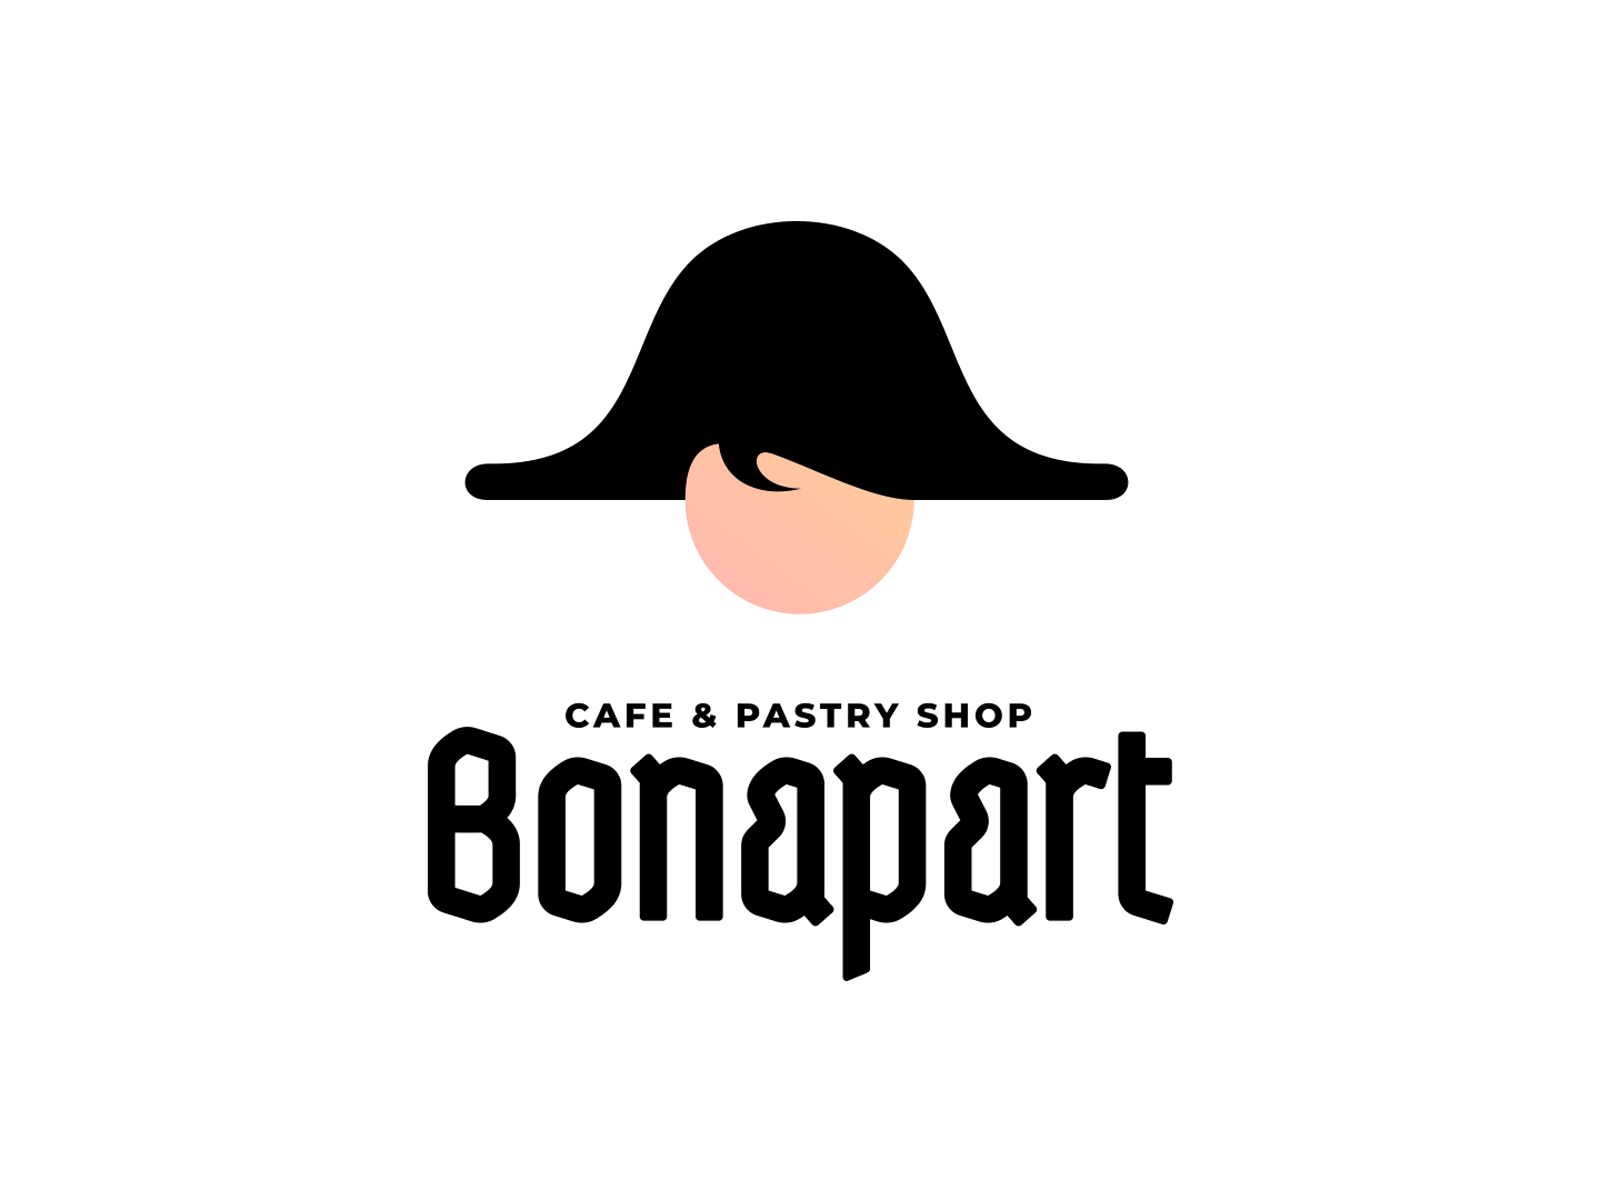 Bonapart Cafe & Pastry Shop Logo alcoholic drinks design braind cafe logo gif logo logo animation logo design logo designer pastry shop